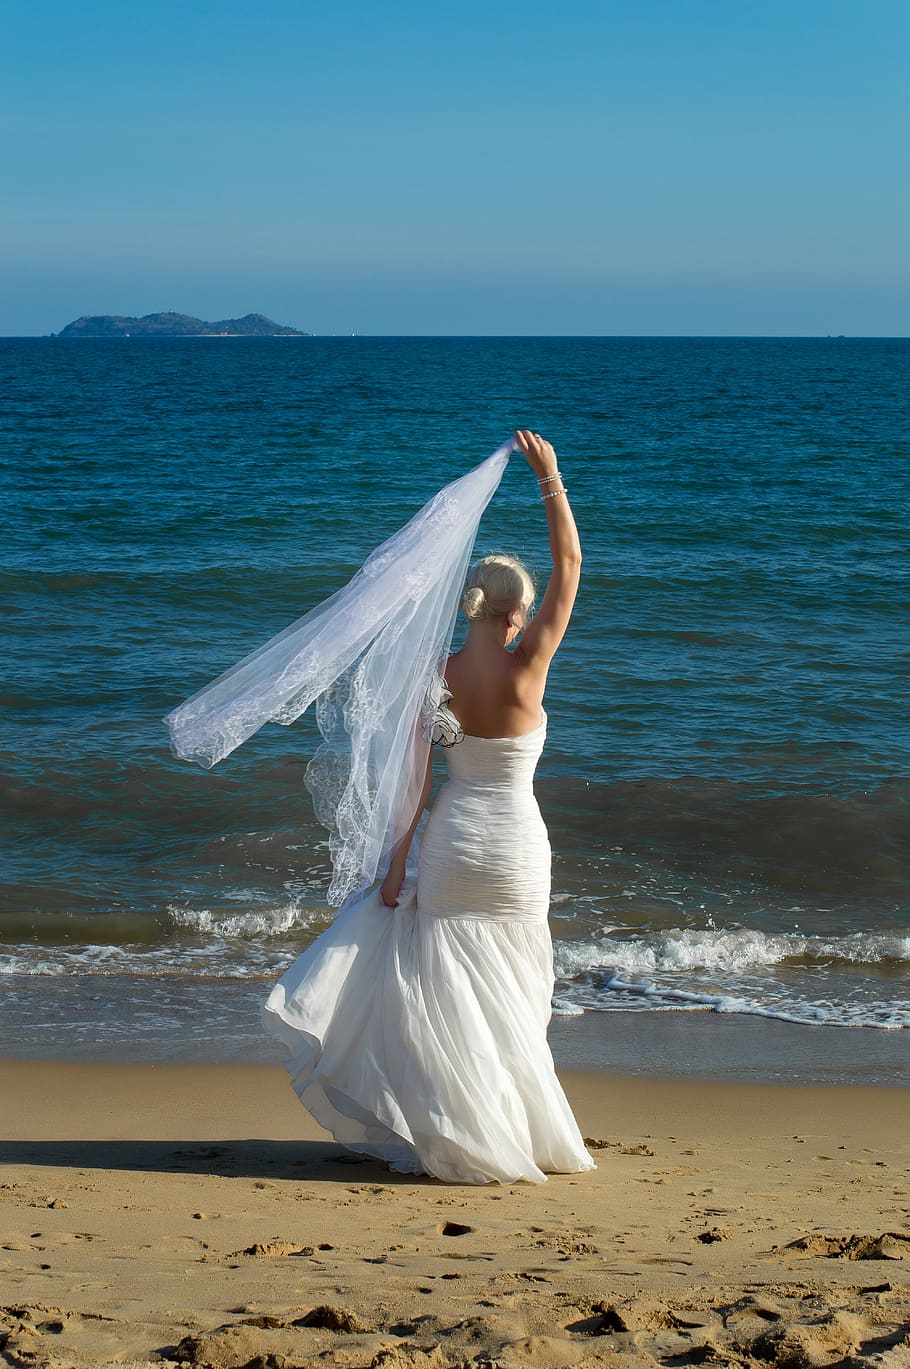 pirang di gaun pengantin, gaun putih, laut, pengantin perempuan laut, berjalan di atas pasir, istri, pernikahan menembak, kebahagiaan, cinta, fata